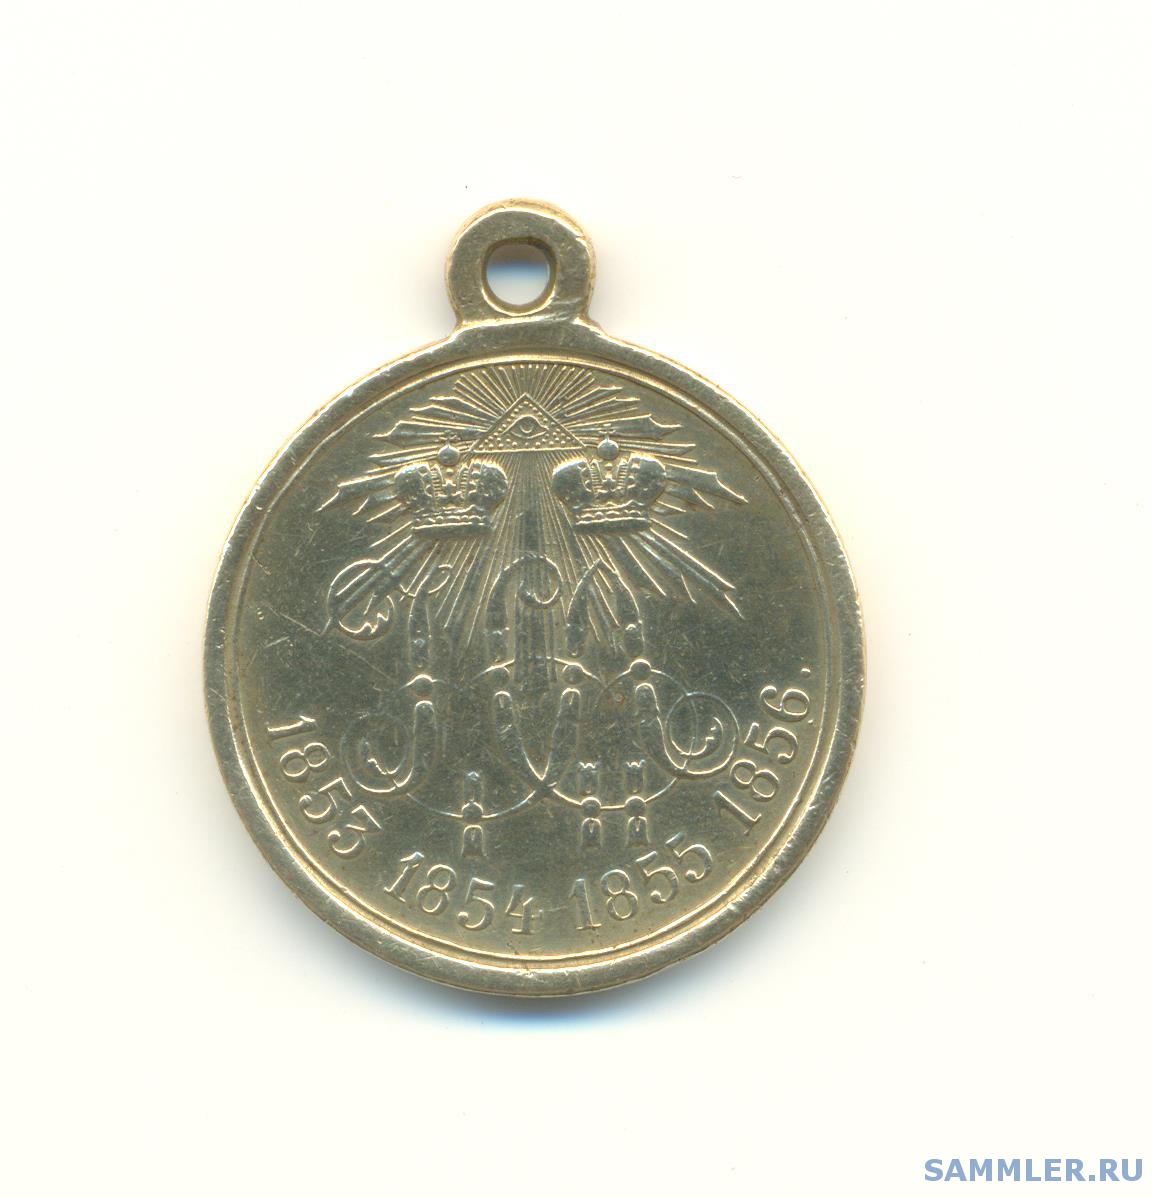 Крым орден на планете земля. Медаль за крымскую войну 1853-56 гг-цена.